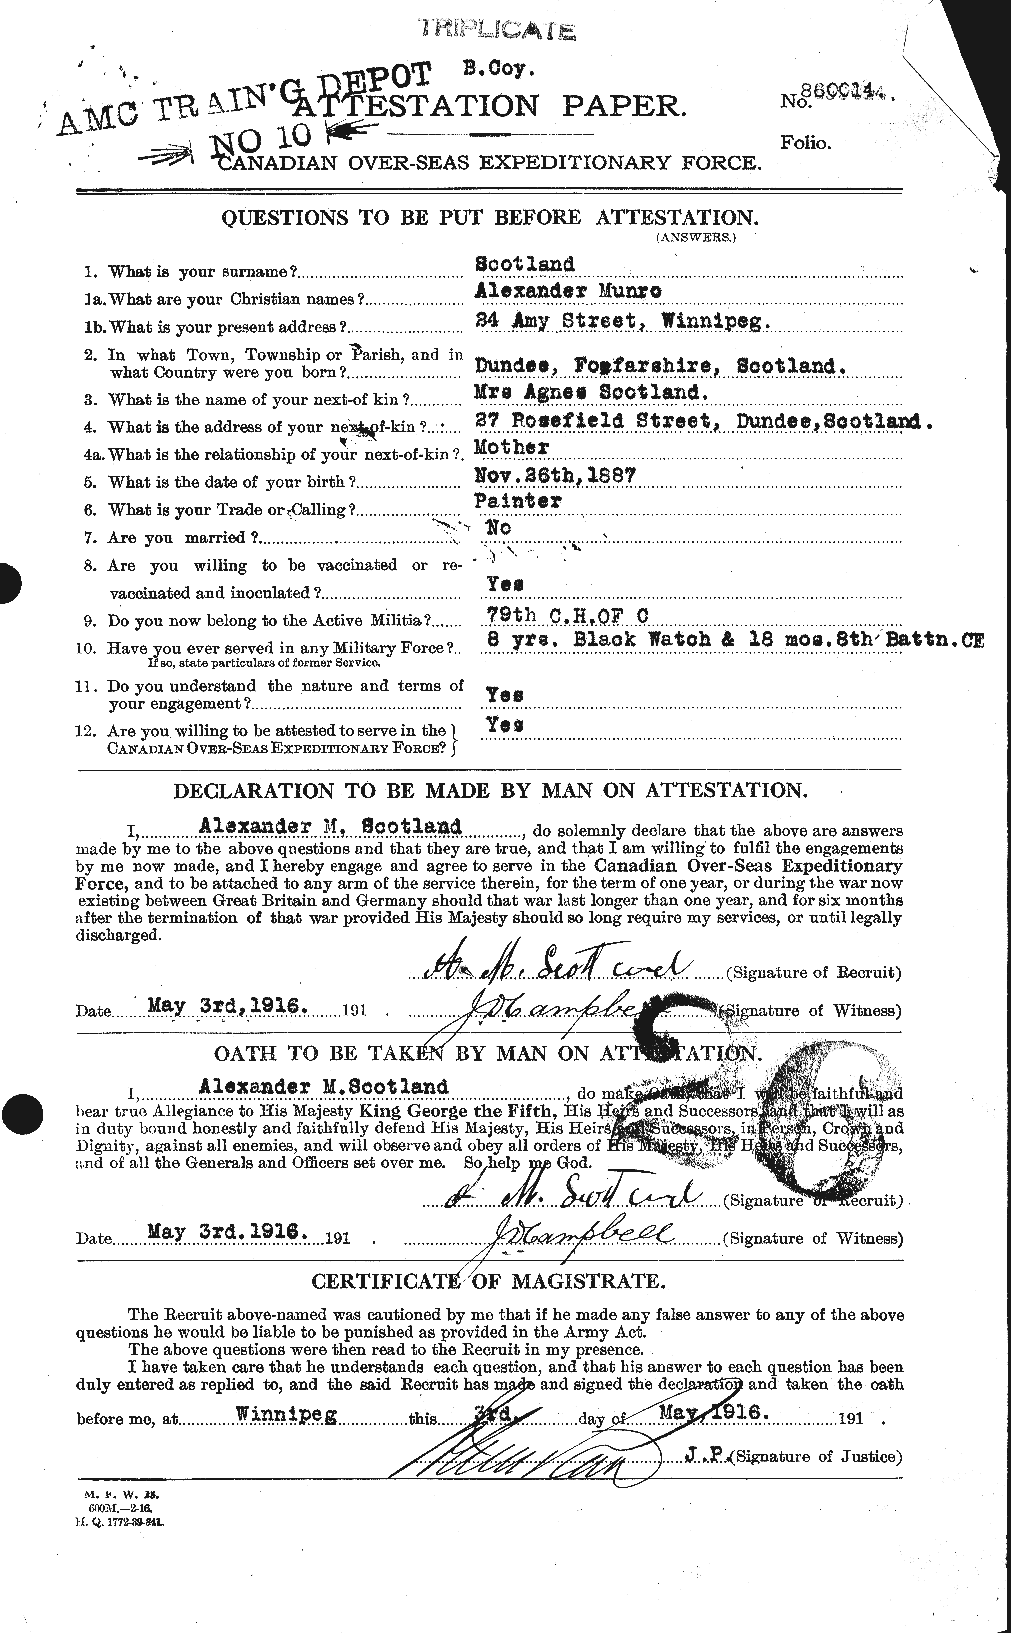 Dossiers du Personnel de la Première Guerre mondiale - CEC 079303a